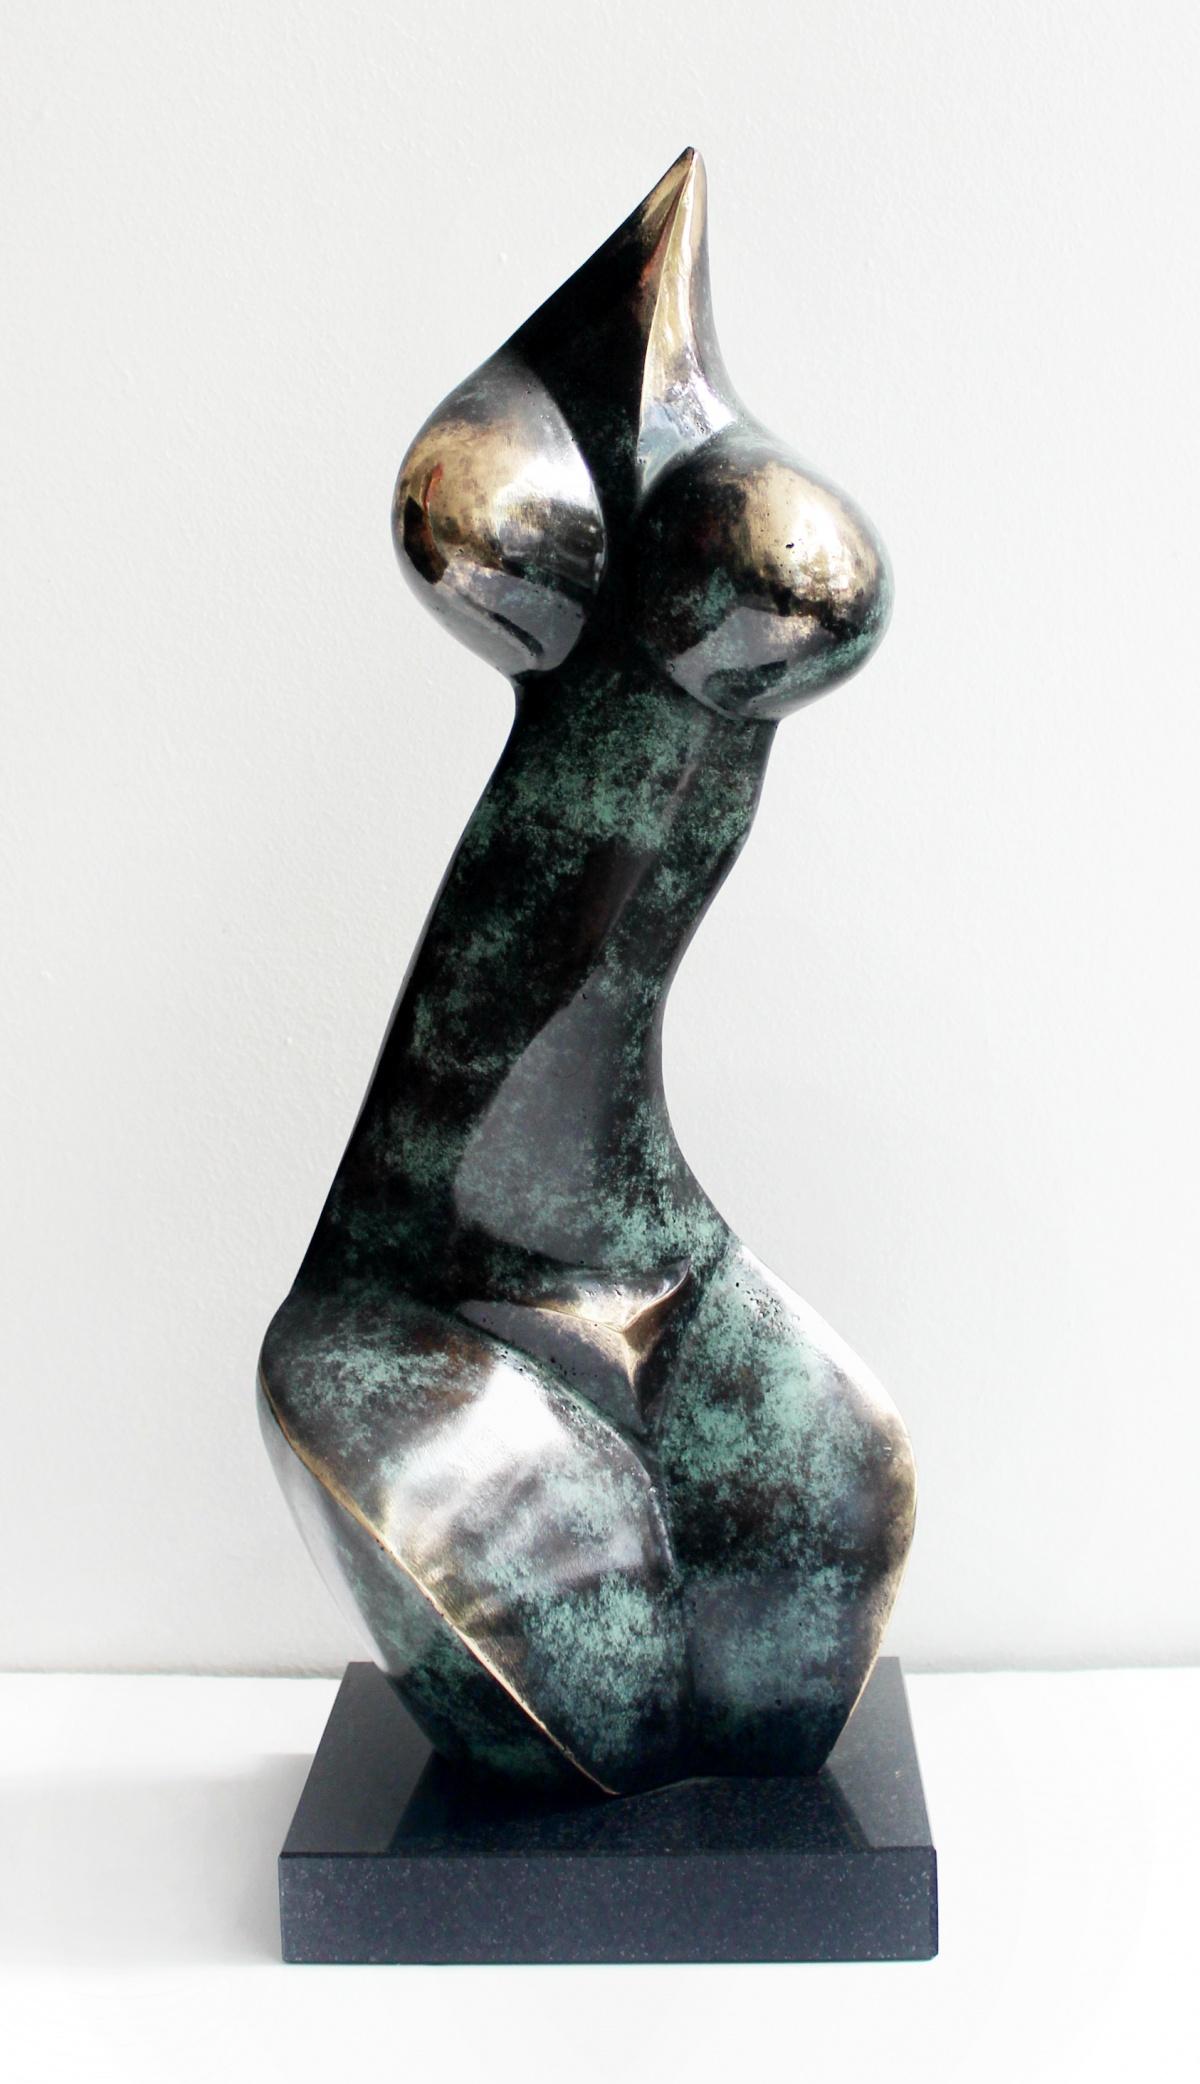 Stanisław Wysocki Nude Sculpture - Nude - XXI Century, Contemporary Bronze Sculpture, Abstract, Figurative